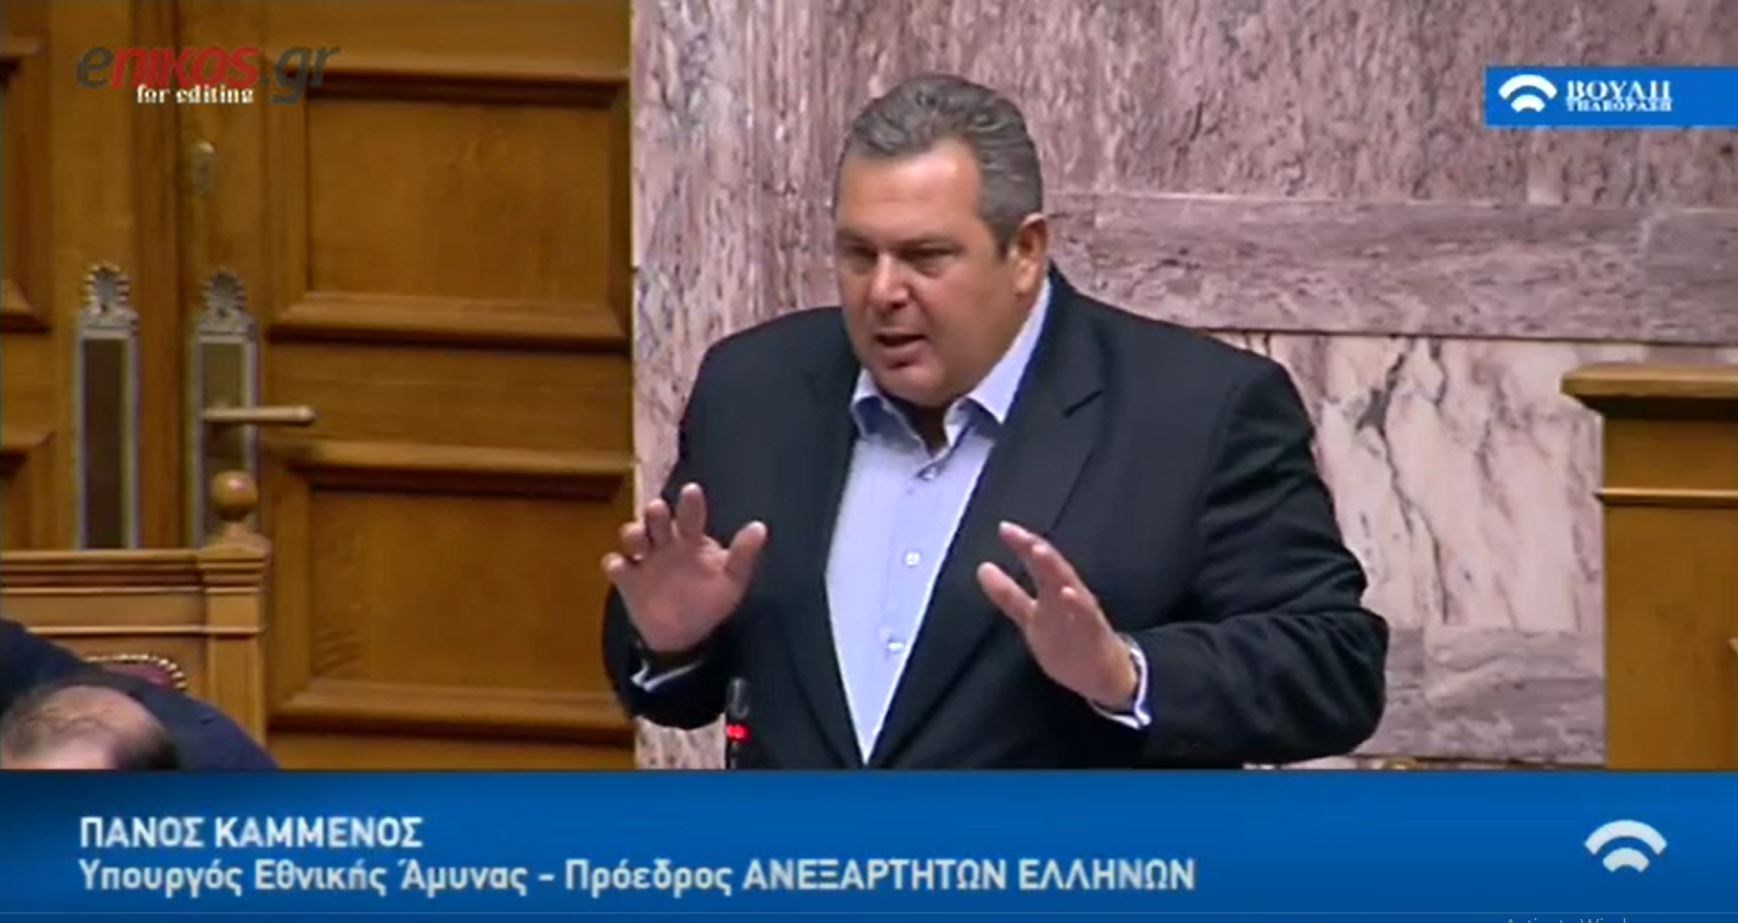 Καμμένος: Μόνο όταν τα Σκόπια ολοκληρώσουν τους όρους της συμφωνίας και συμφωνήσει και η Ελλάδα θα ενταχθούν στο ΝΑΤΟ – ΒΙΝΤΕΟ